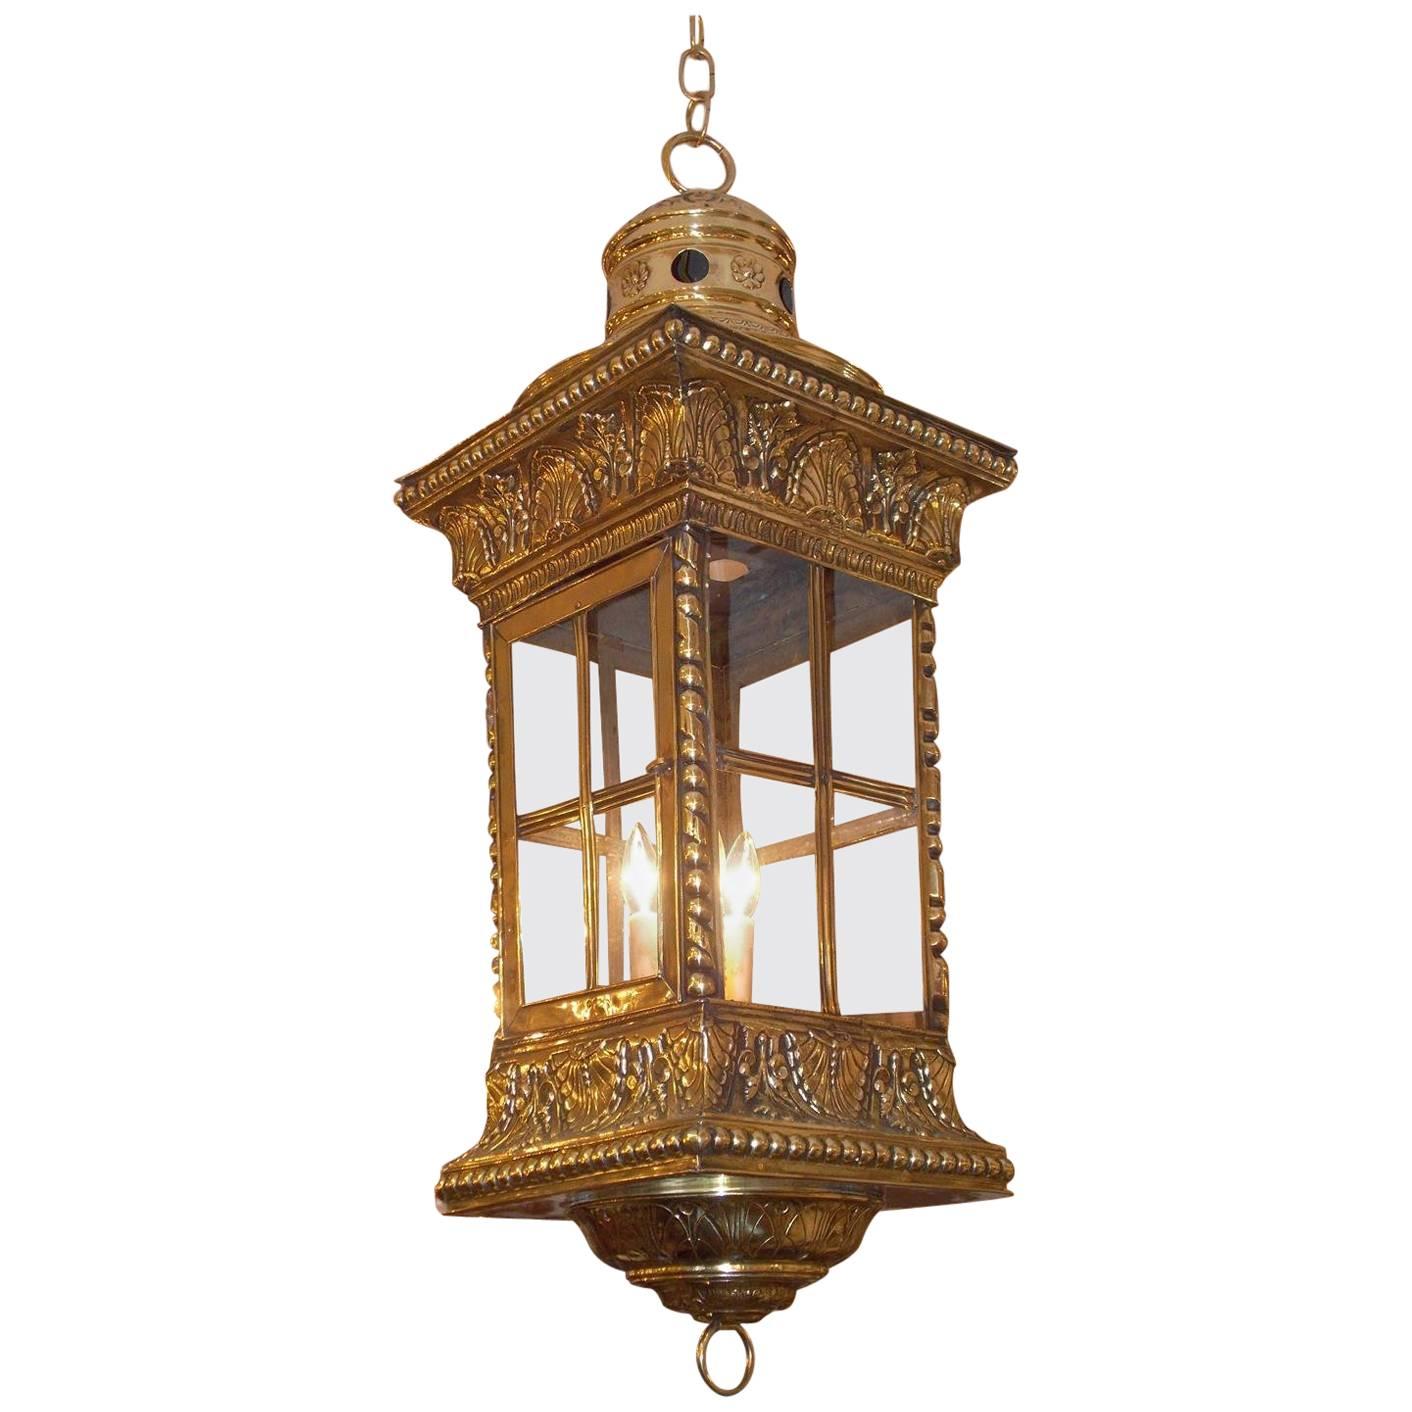 Lanterne de hall à suspendre française en laiton avec coquillage et feuillage en verre, datant d'environ 1830